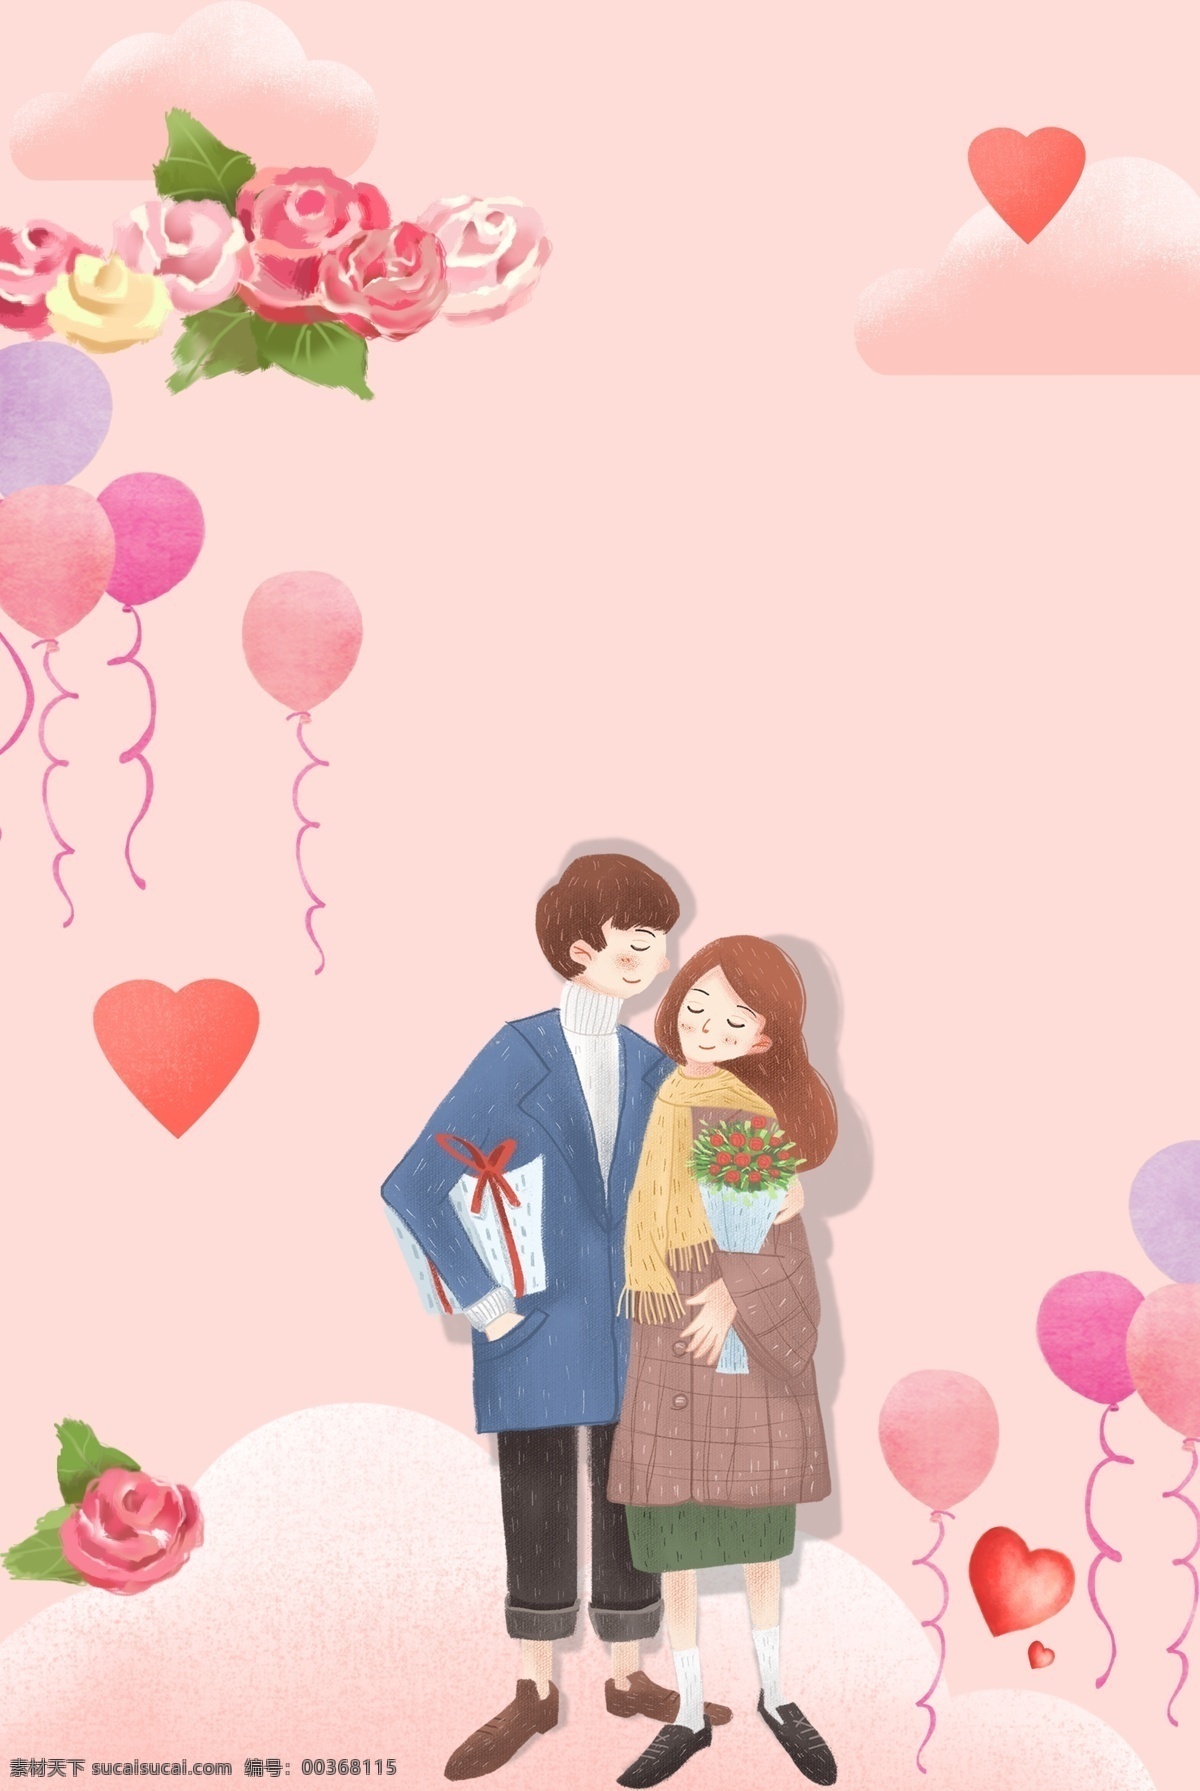 情人节 情侣 购物 活动 海报 拥抱 亲吻 促销背景 爱心 花朵 玫瑰花 情人节活动 情人节海报 气球